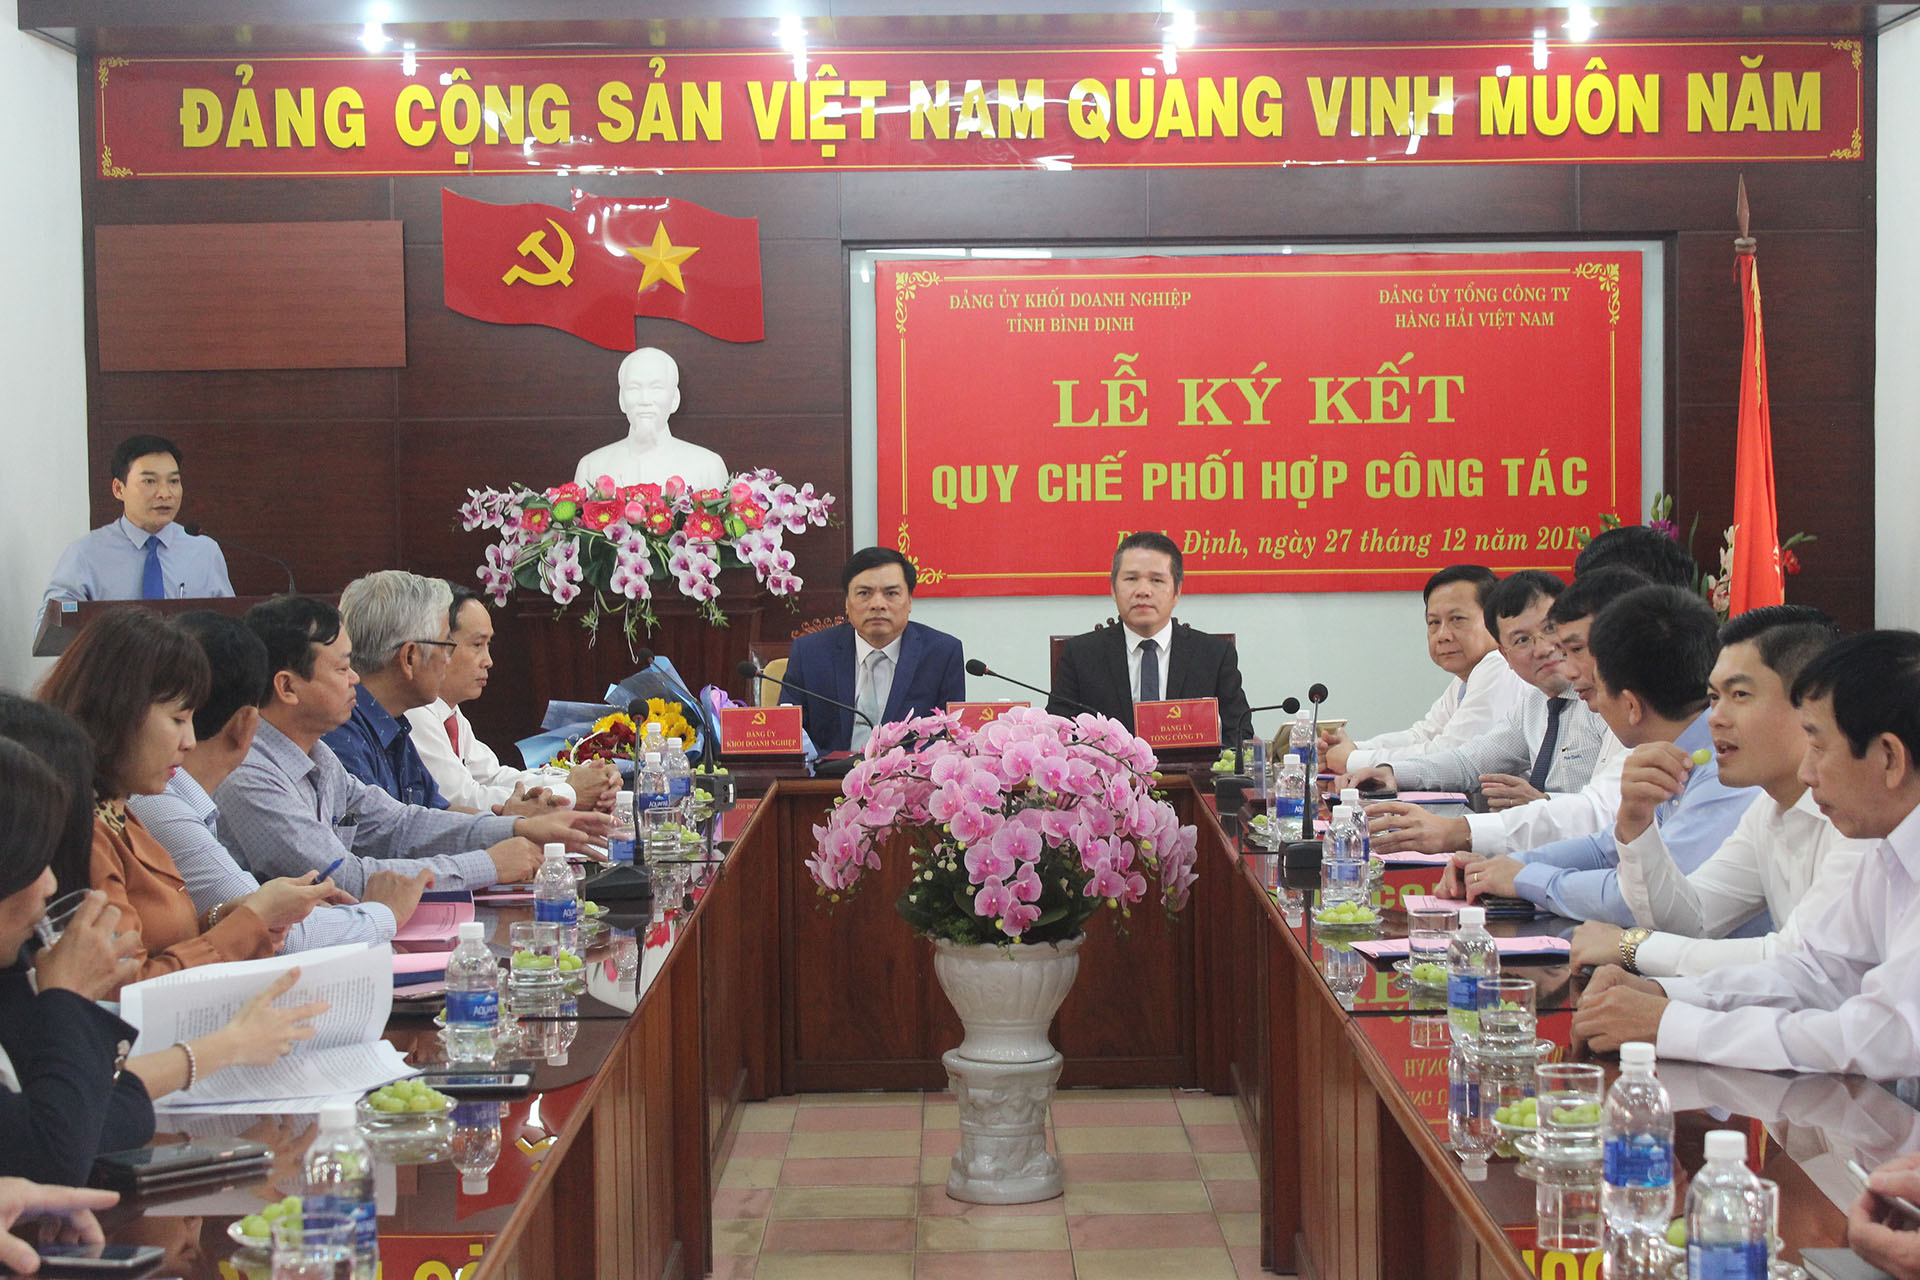 Đảng ủy Khối Doanh nghiệp tỉnh Bình Định và Đảng ủy Tổng Công ty Hàng hải Việt Nam tổ chức Lễ ký kết quy chế phối hợp công tác